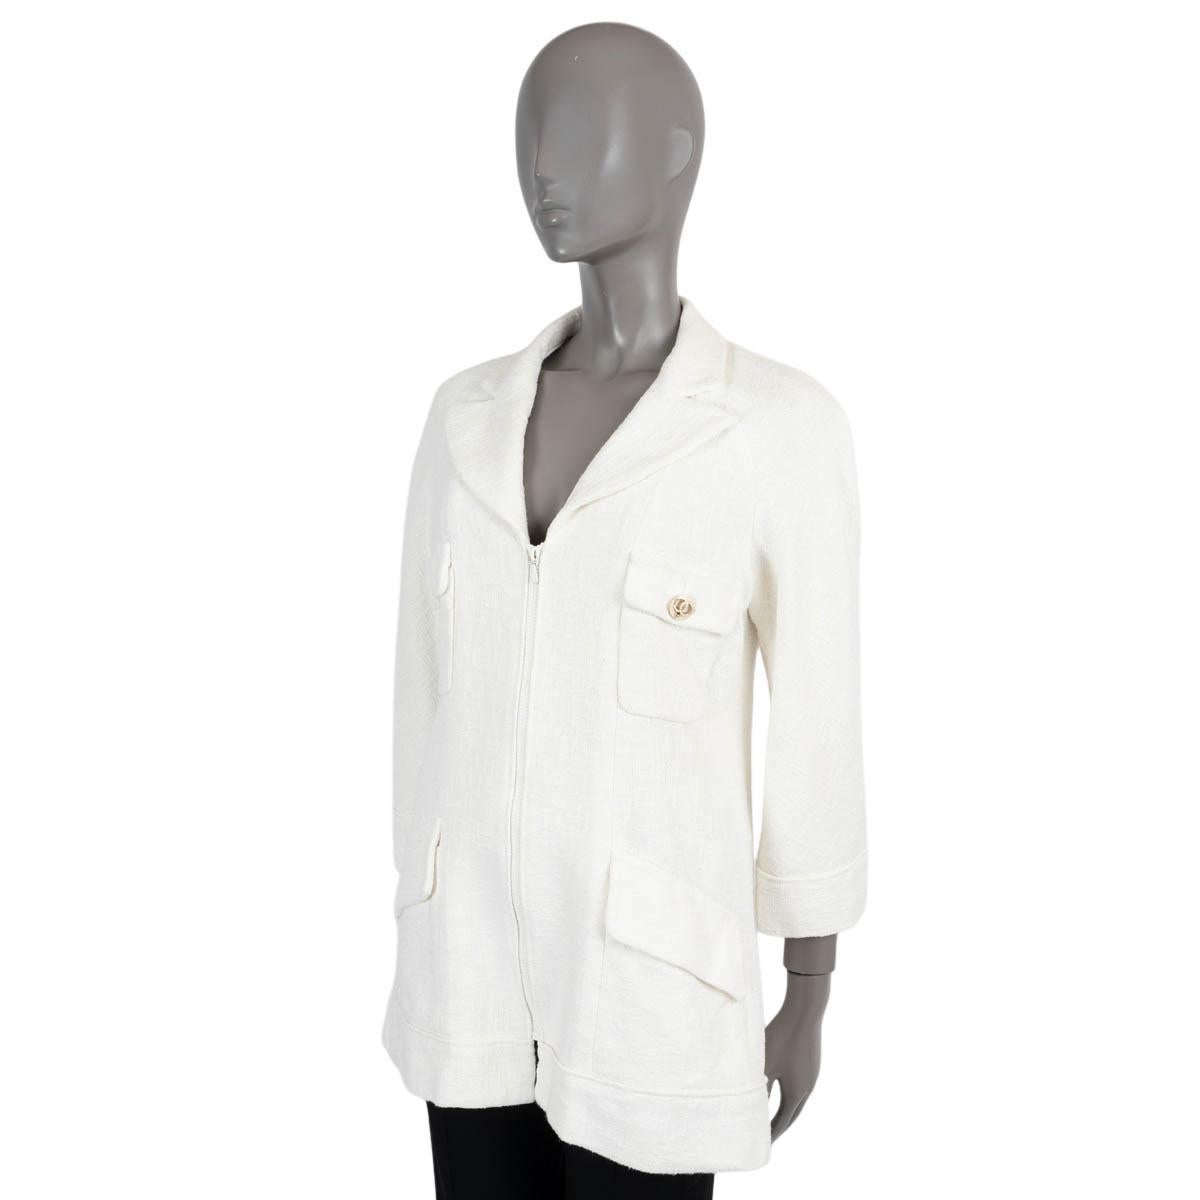 Veste en tweed 100% authentique de Chanel en coton blanc cassé (100%). Il comporte des crêtes, des manches raglan, deux poches boutonnées à rabat sur la poitrine, deux poches à rabat à la taille et deux plis zippés sur les côtés du dos. Il se ferme